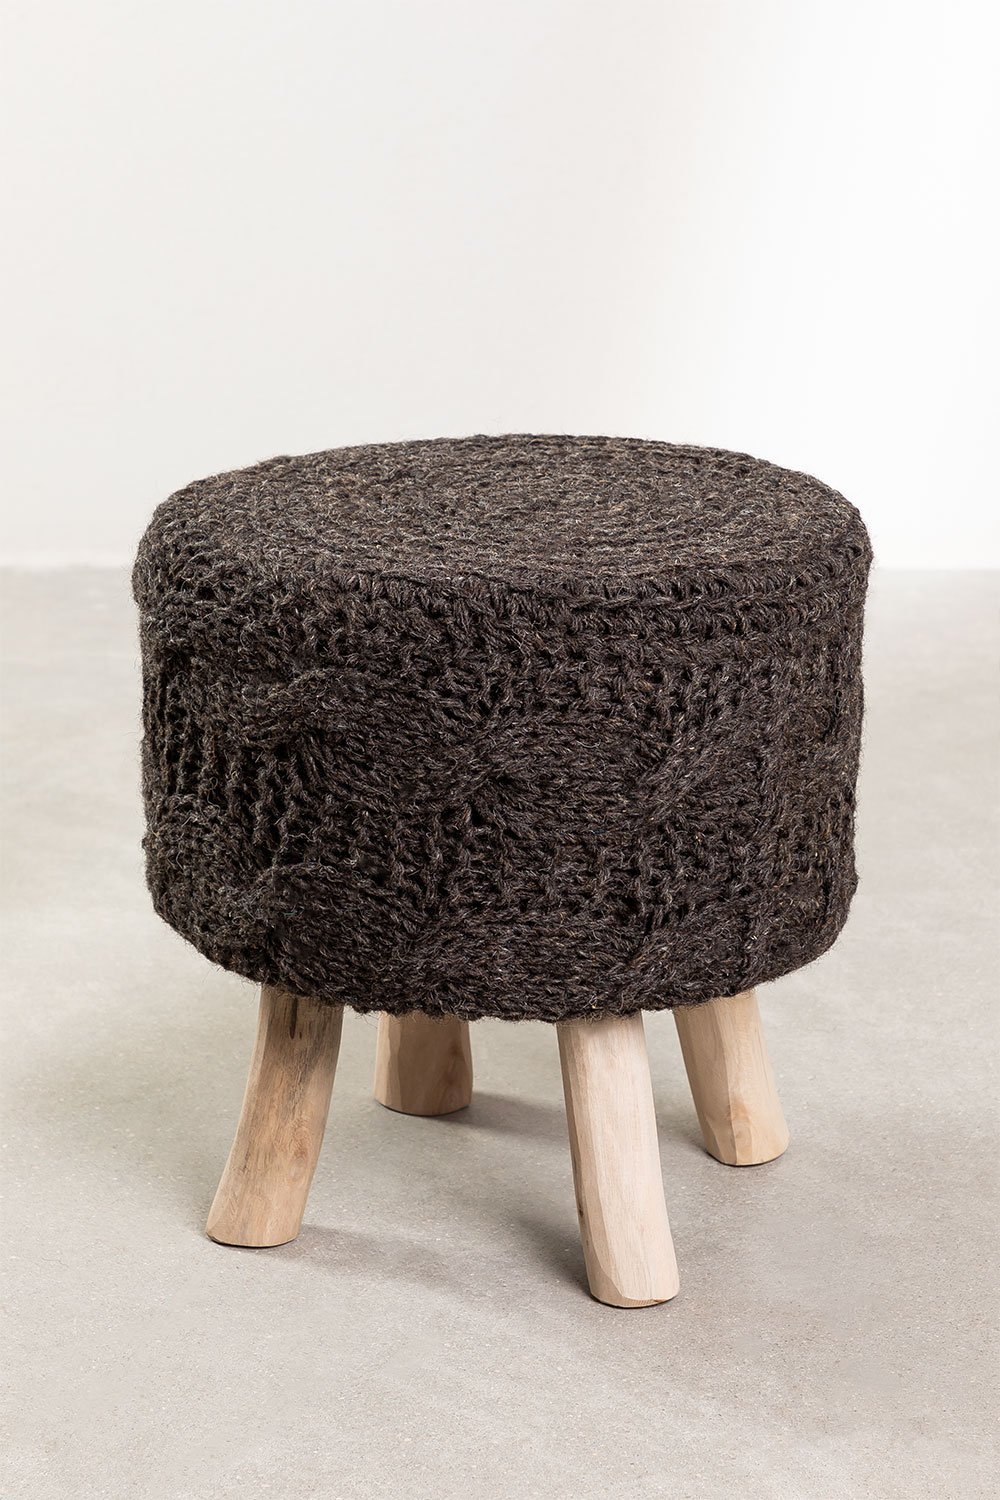 Lage ronde kruk van wol en hout Rixar, galerij beeld 1